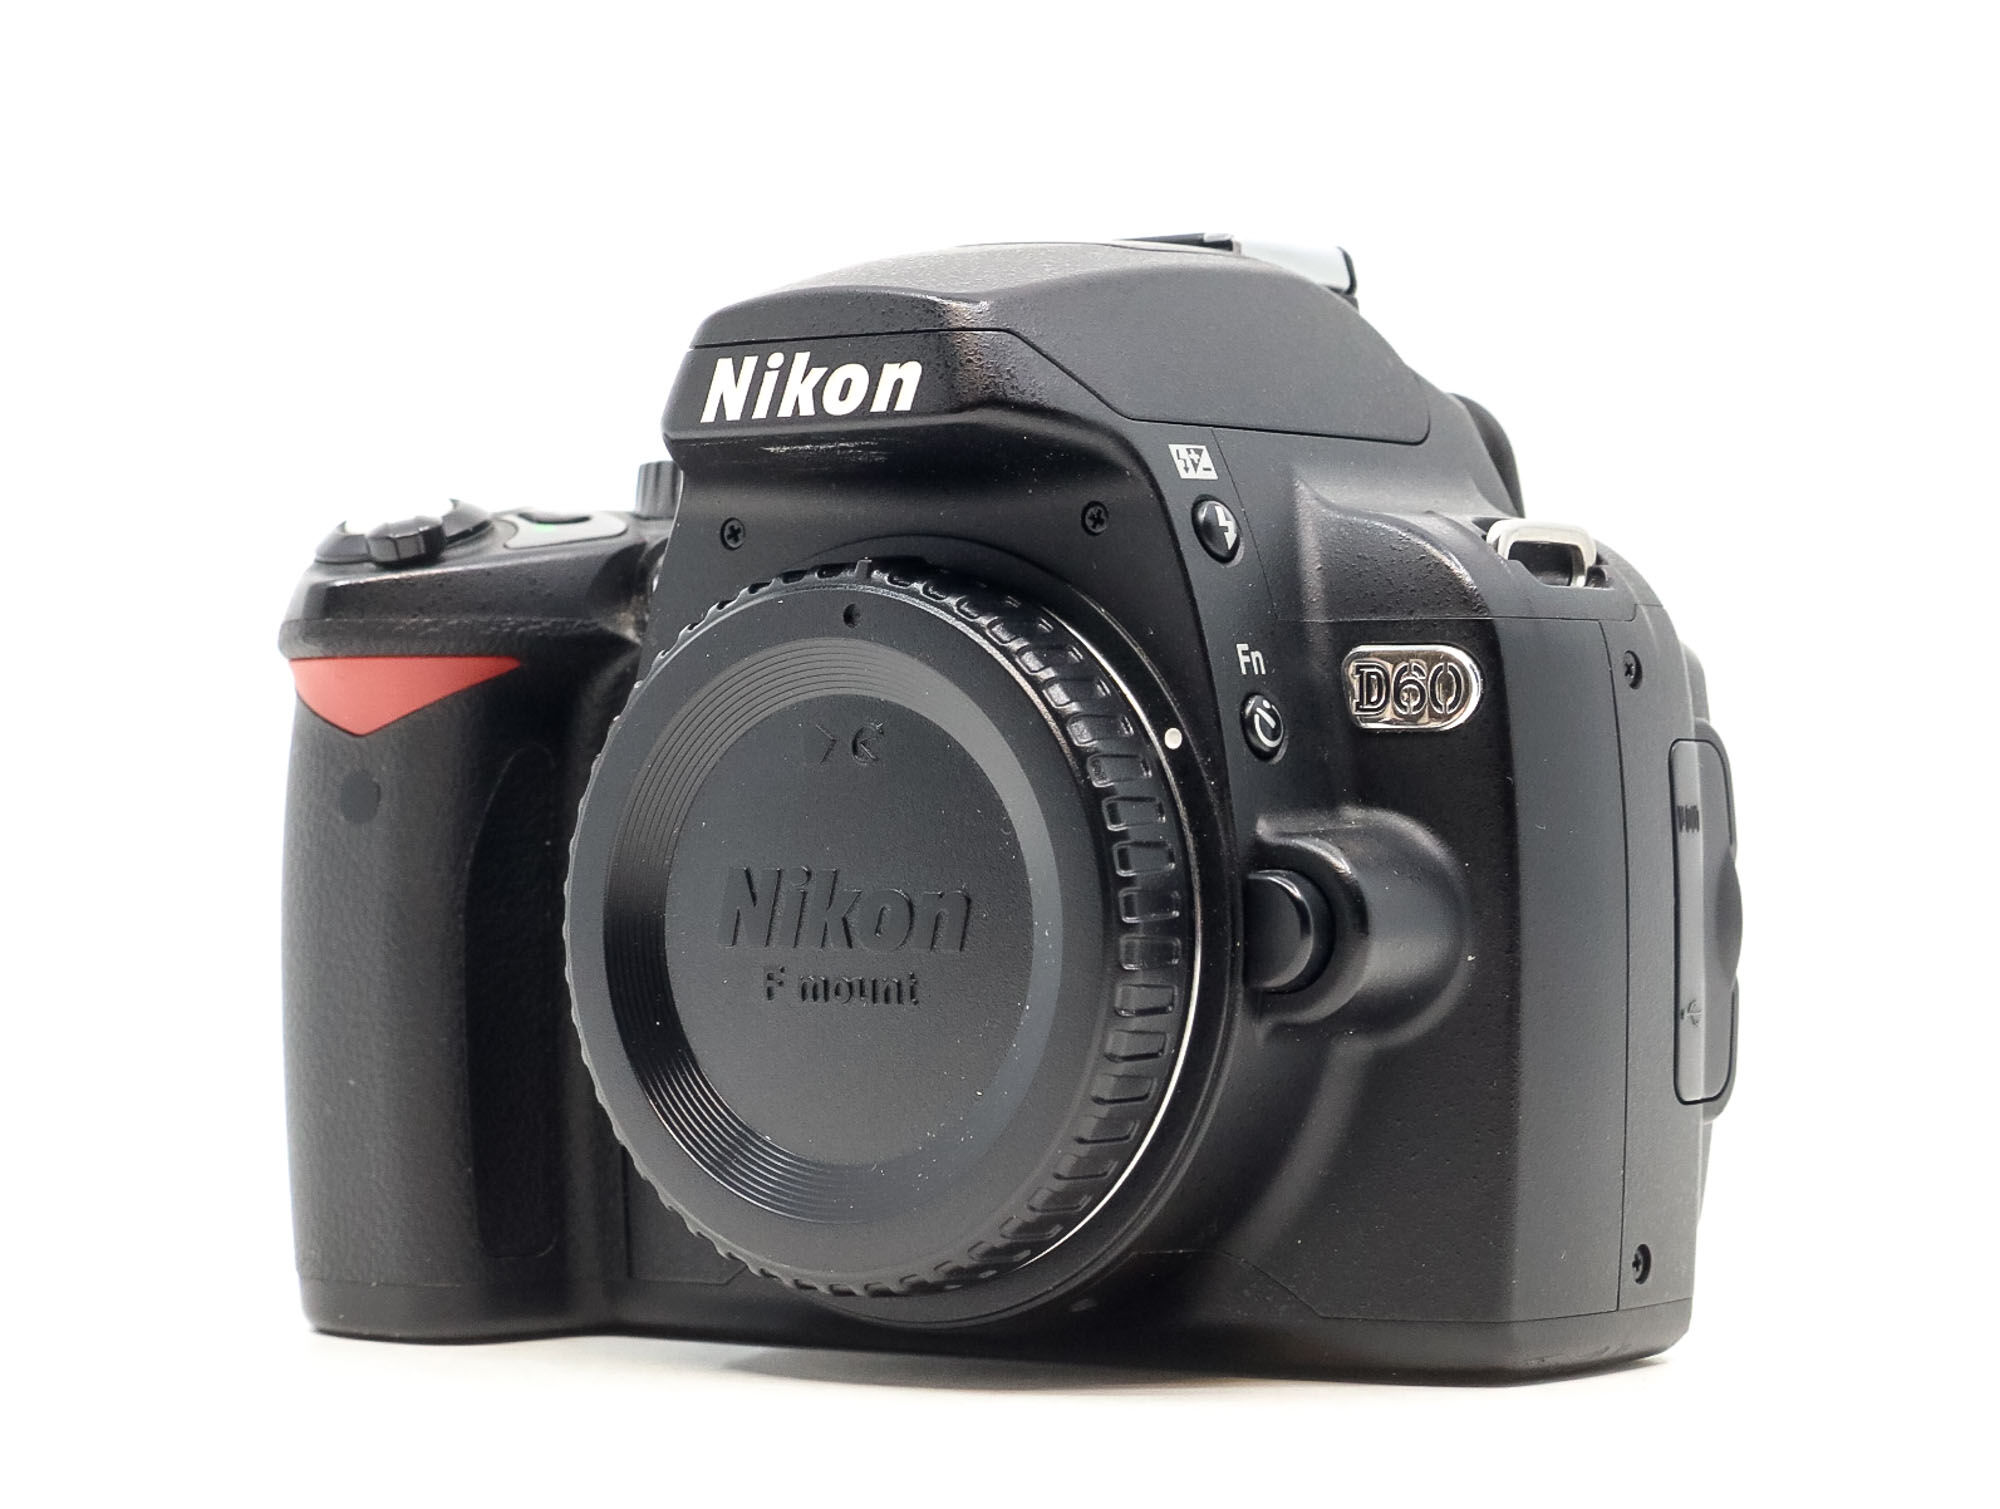 Nikon D60 (Condition: Good)